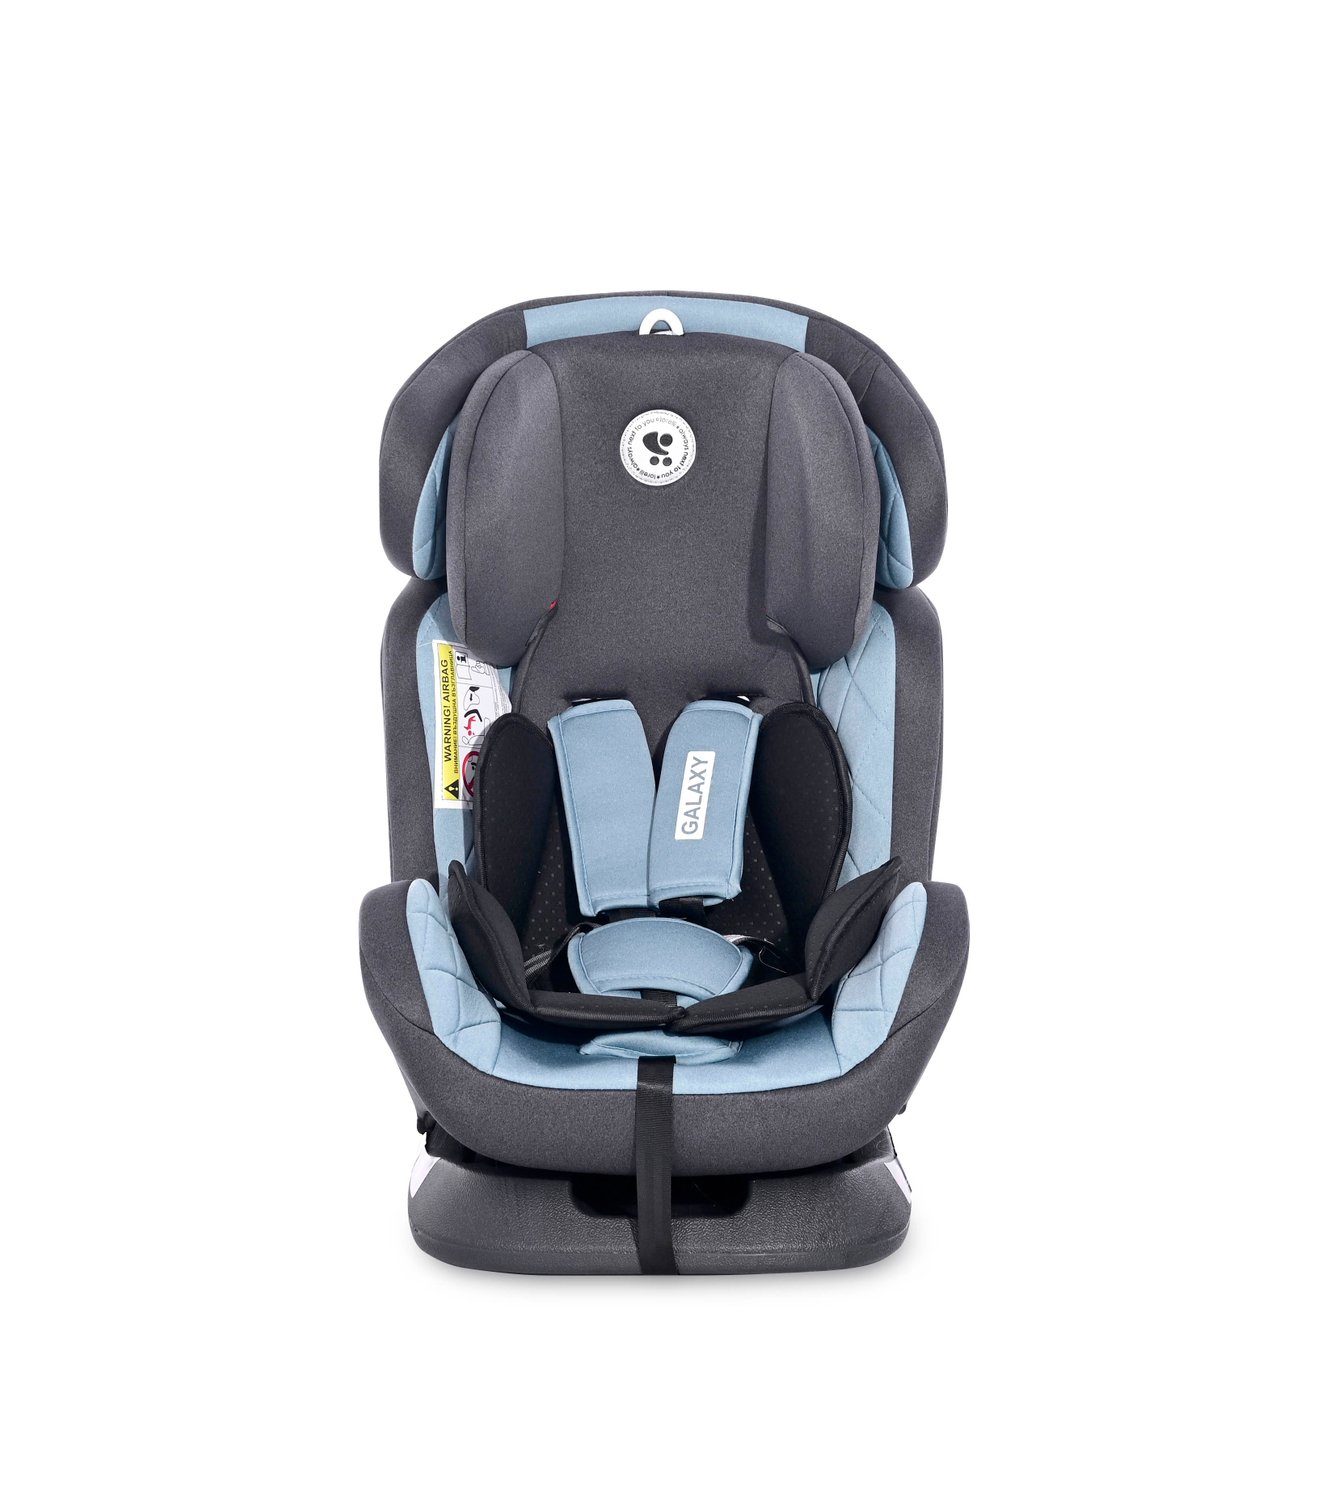 bis: - verstellbar Kindersitz Reboard 36 Gruppe (0 kg) Kissen hellblau kg, Lorelli Galaxy Autokindersitz 0+/1/2/3, 36